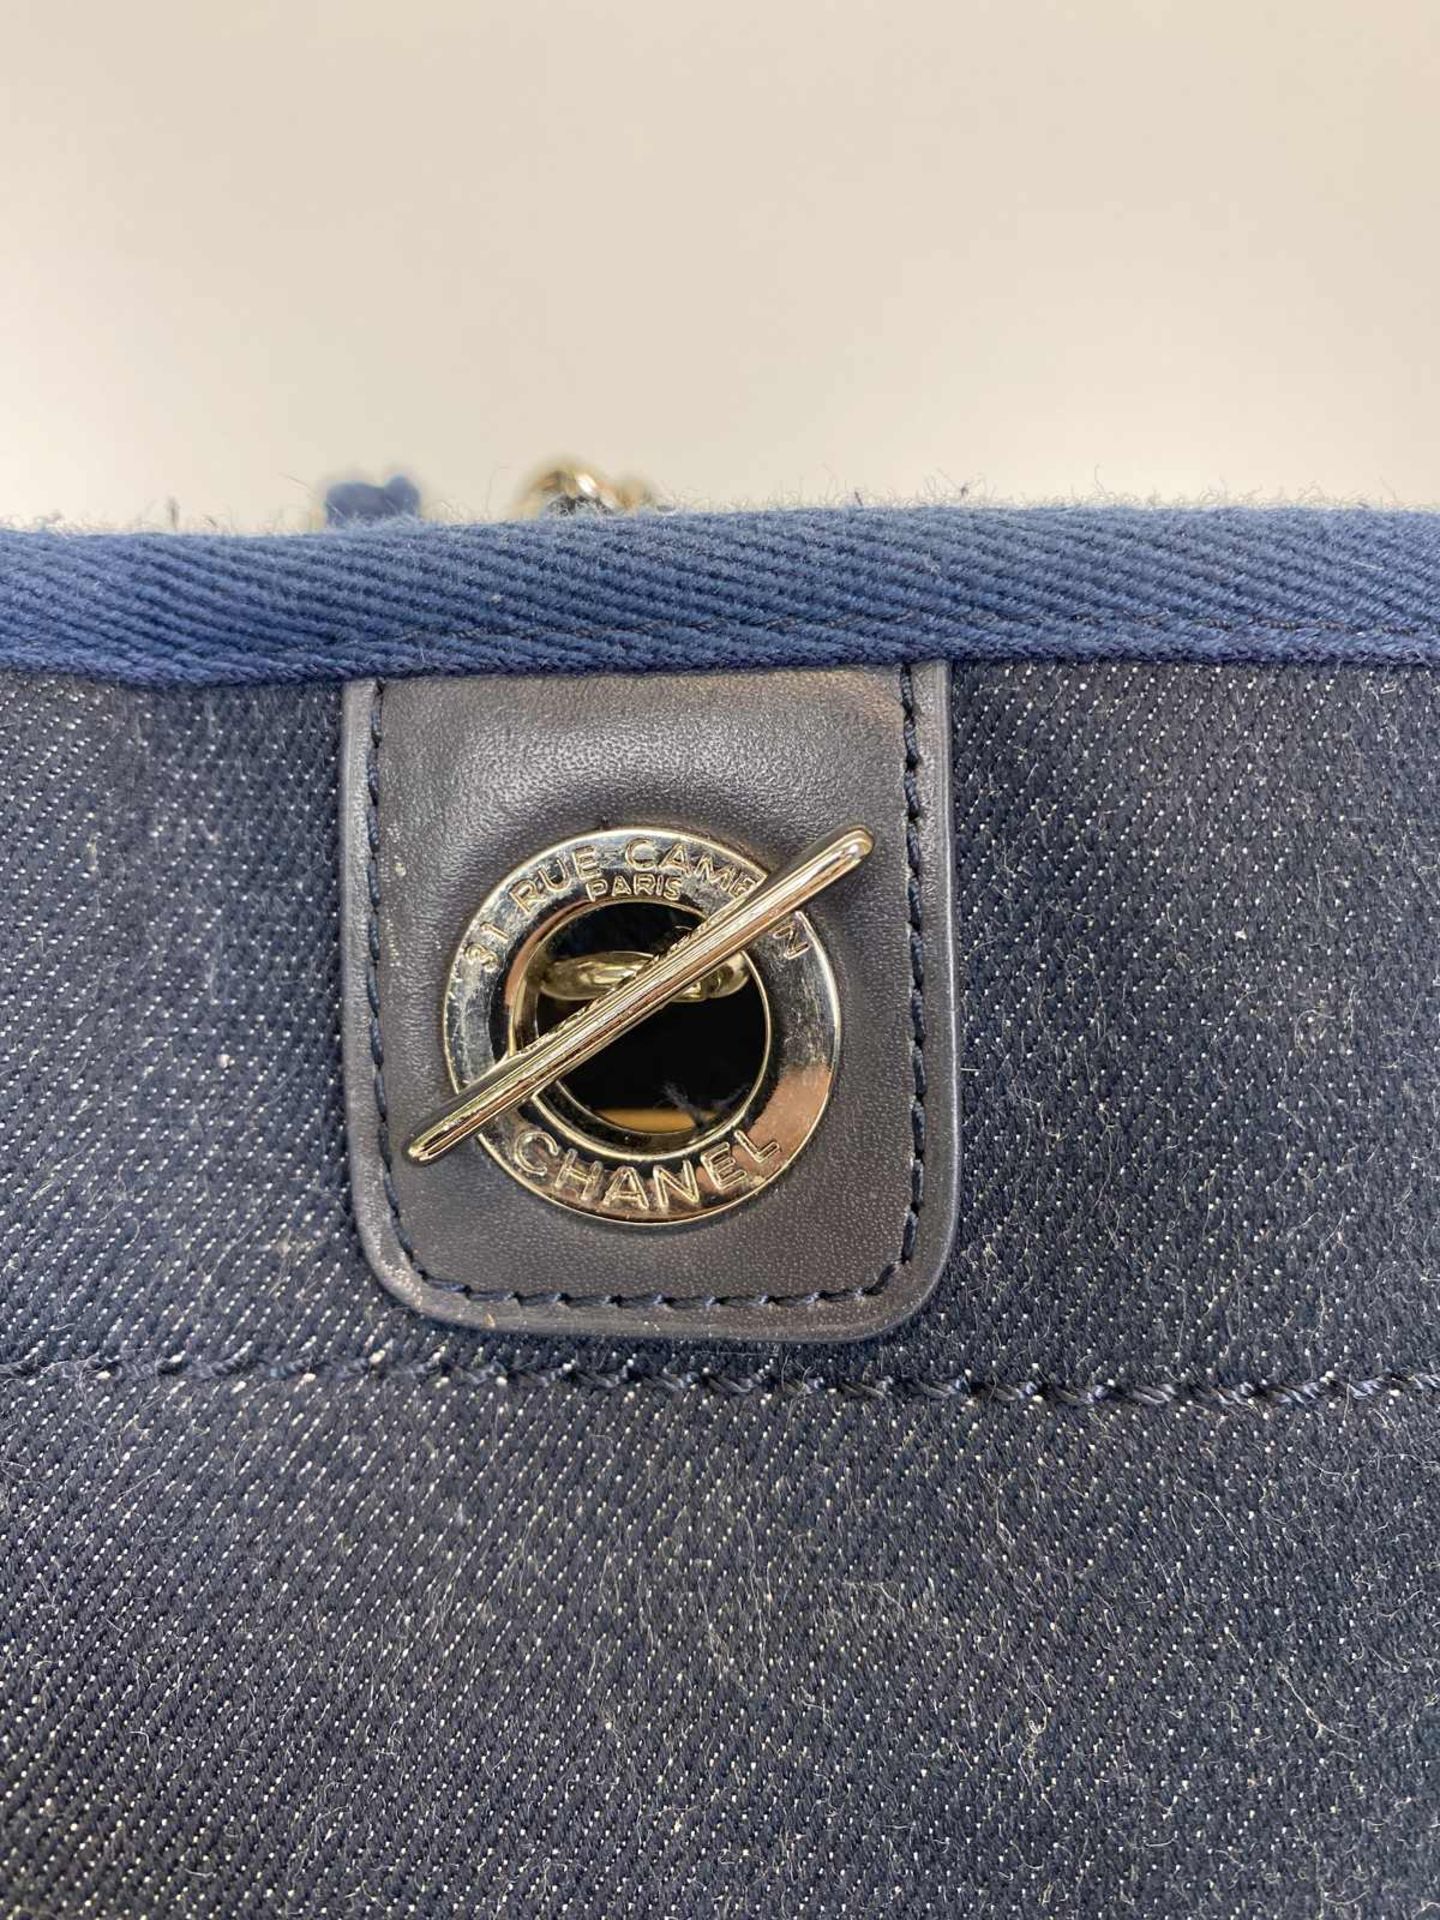 CHANEL Shopper Modell Deauville petit in Denim (Jeans) blau mit silberfarbener Hardware. Typische - Image 3 of 4